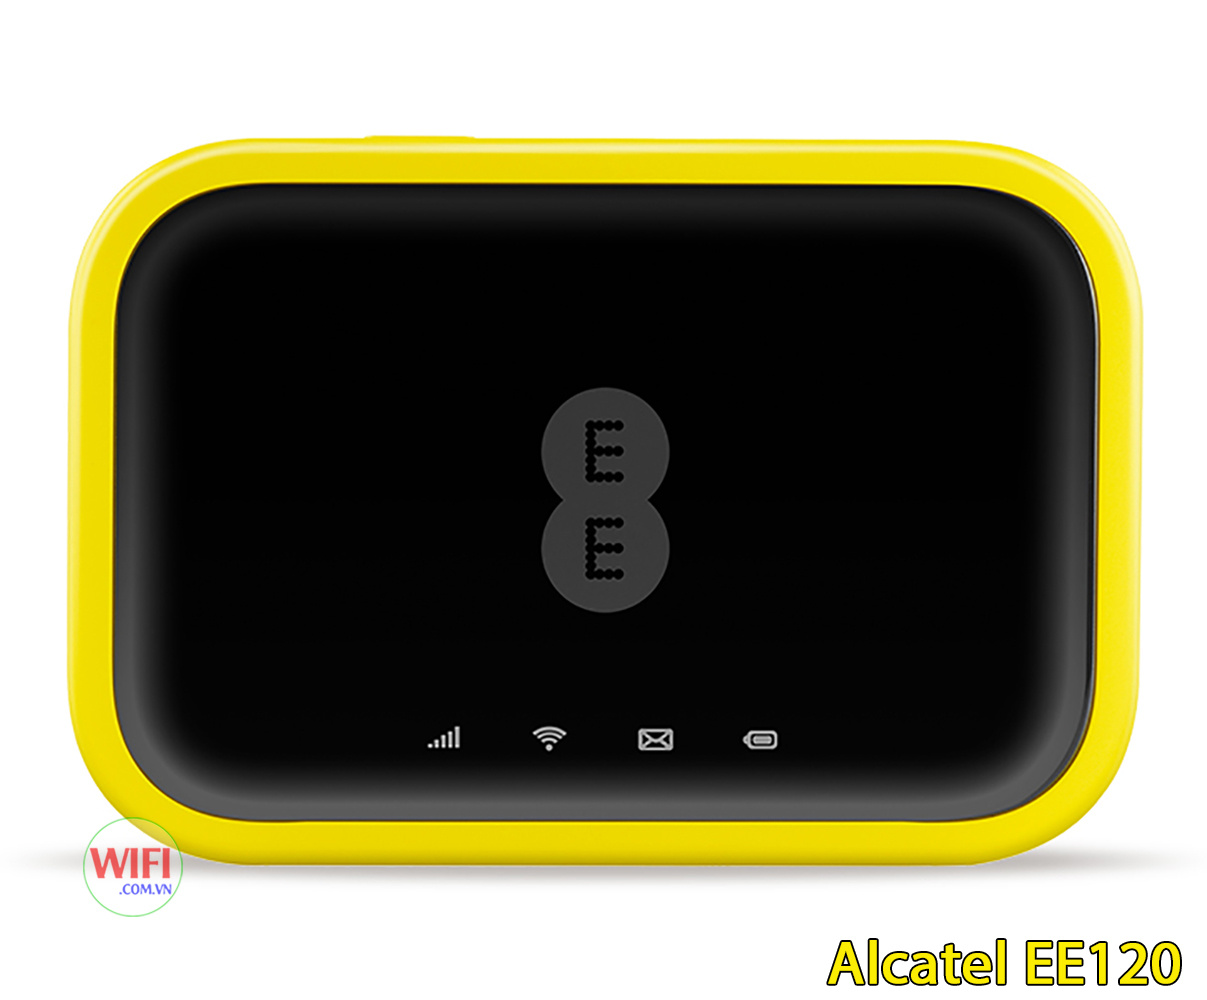 Bộ Phát Wifi 4G Cao Cấp Alcatel EE120, Tốc Độ 4G 600Mbps, Pin 4300mAh, Wifi 802.11ac Hỗ Trợ 20 Kết Nối